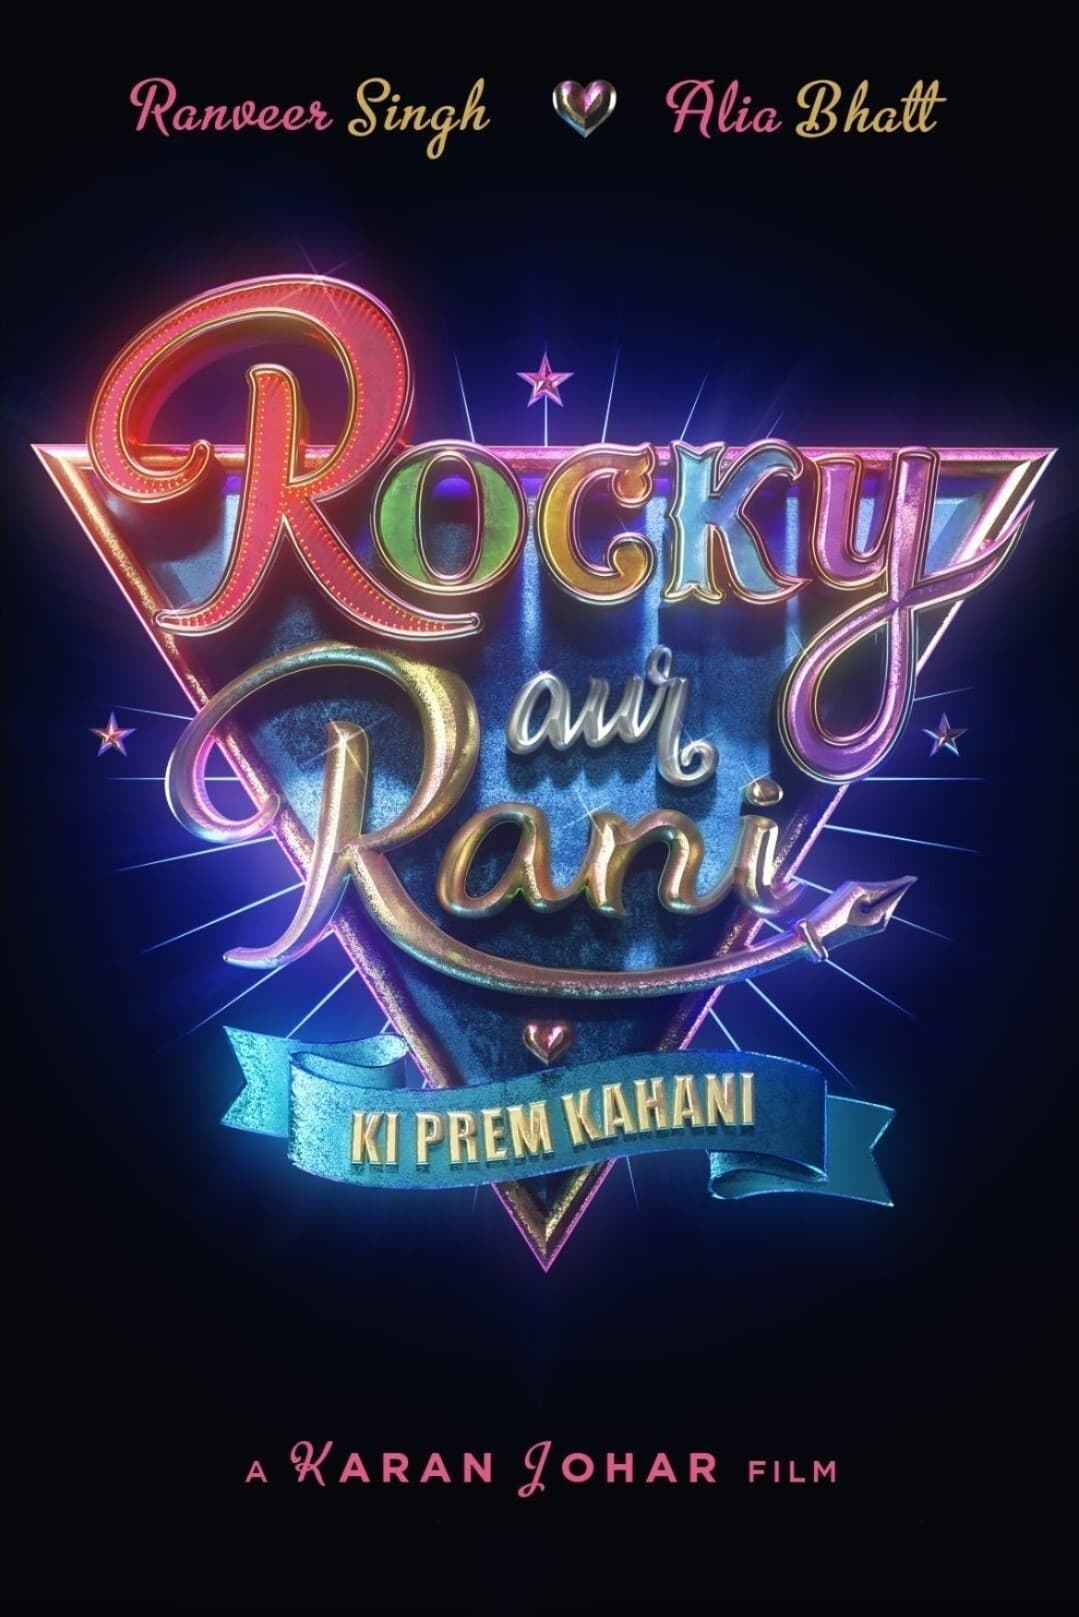 Poster for the movie "Rocky aur Rani ki Prem Kahani"